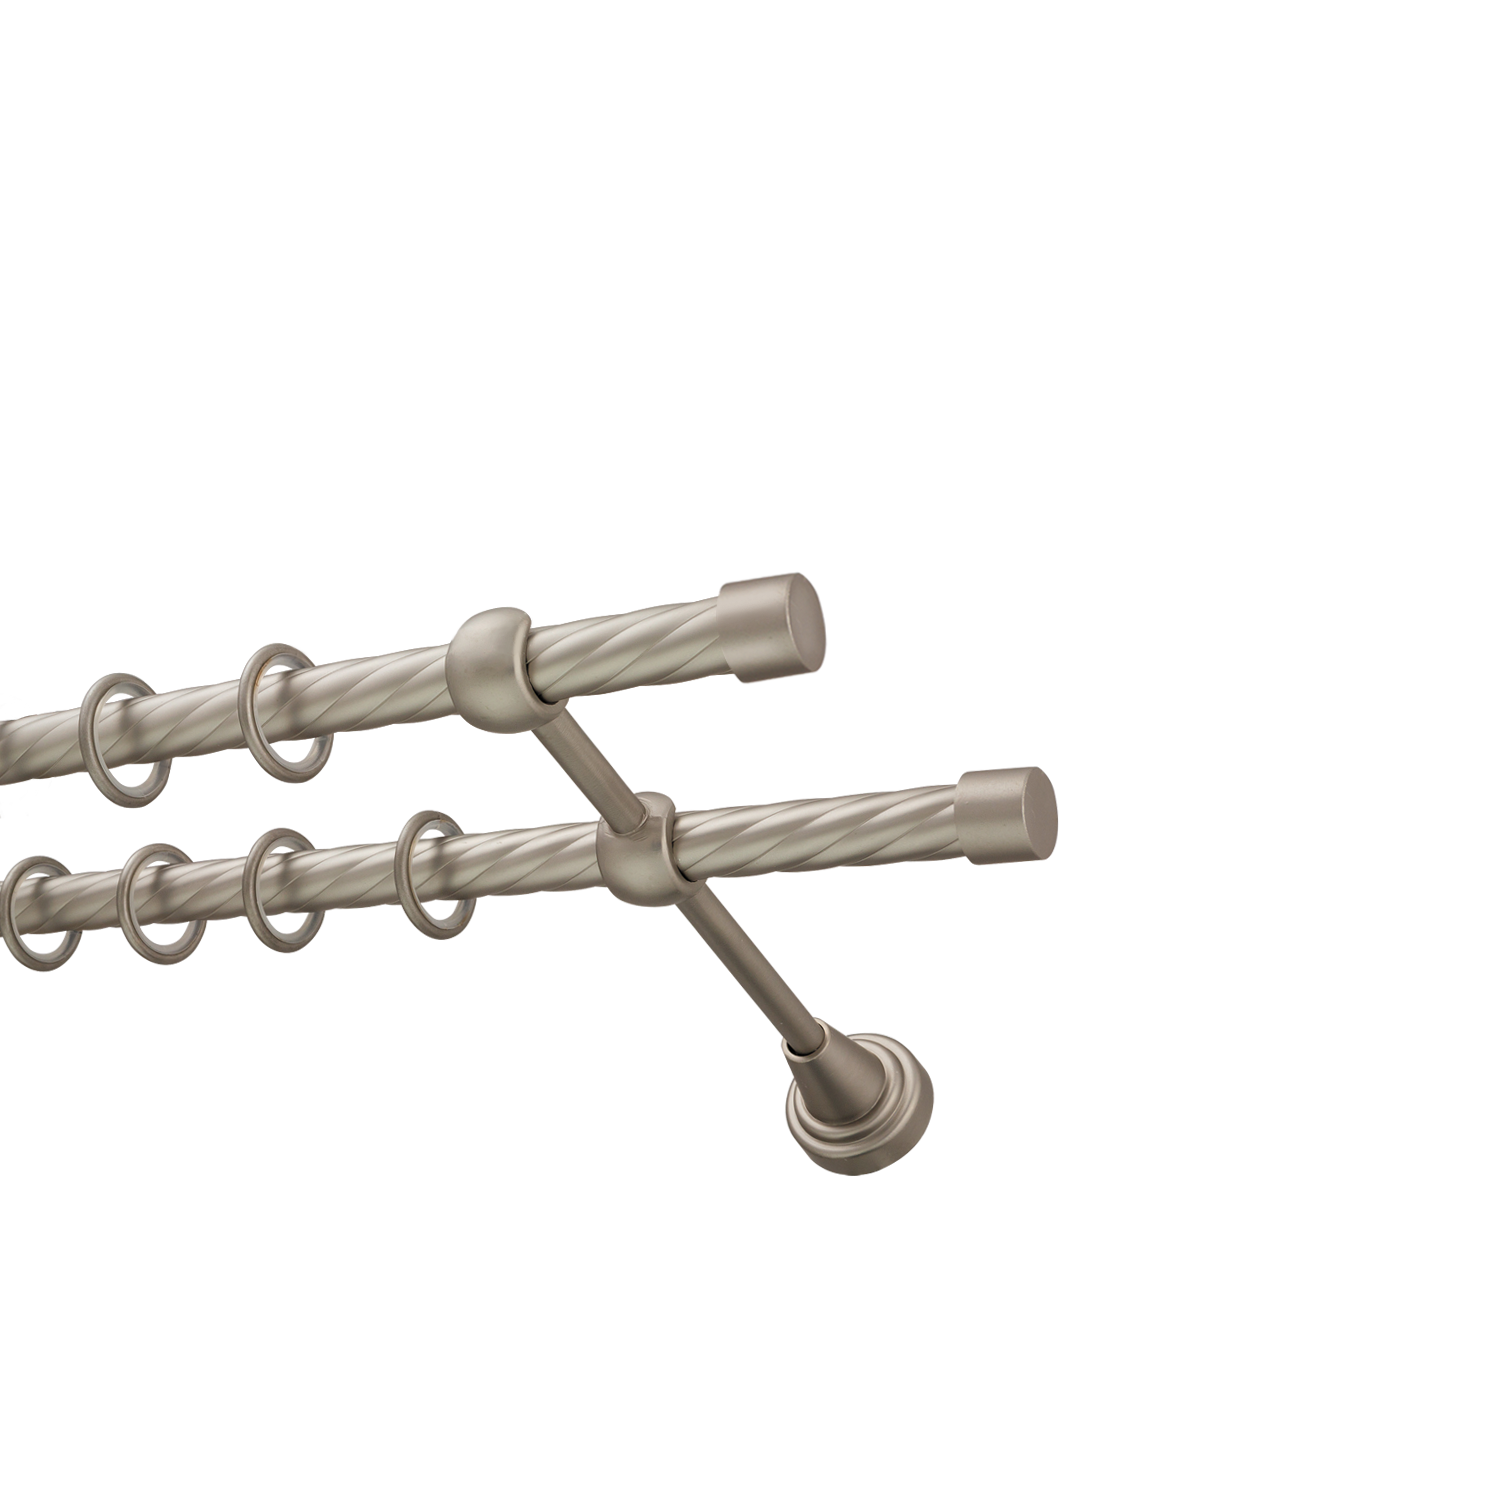 Металлический карниз для штор Заглушка, двухрядный 16/16 мм, сталь, витая штанга, длина 200 см